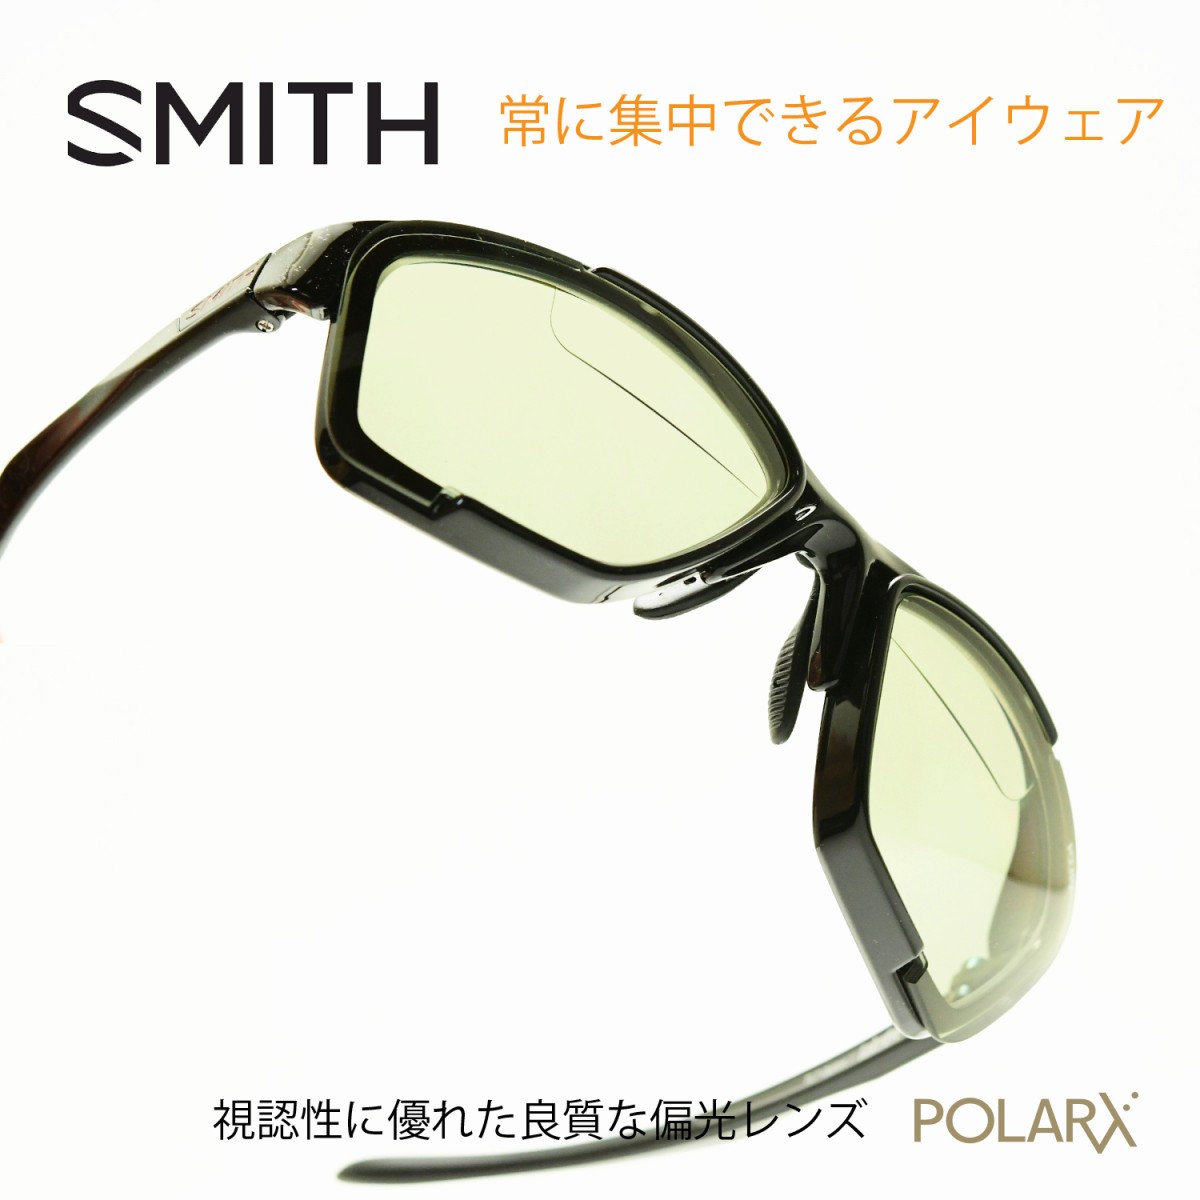 楽天市場 Smith スミスtake Five Switch Readingblack X Light Green37加入度 2 00メガネ 眼鏡 めがね メンズ レディース おしゃれ ブランド 人気 おすすめ フレーム 流行り 度付き レンズ サングラス スポーツ 偏光 老眼鏡 上平 デコリンメガネ